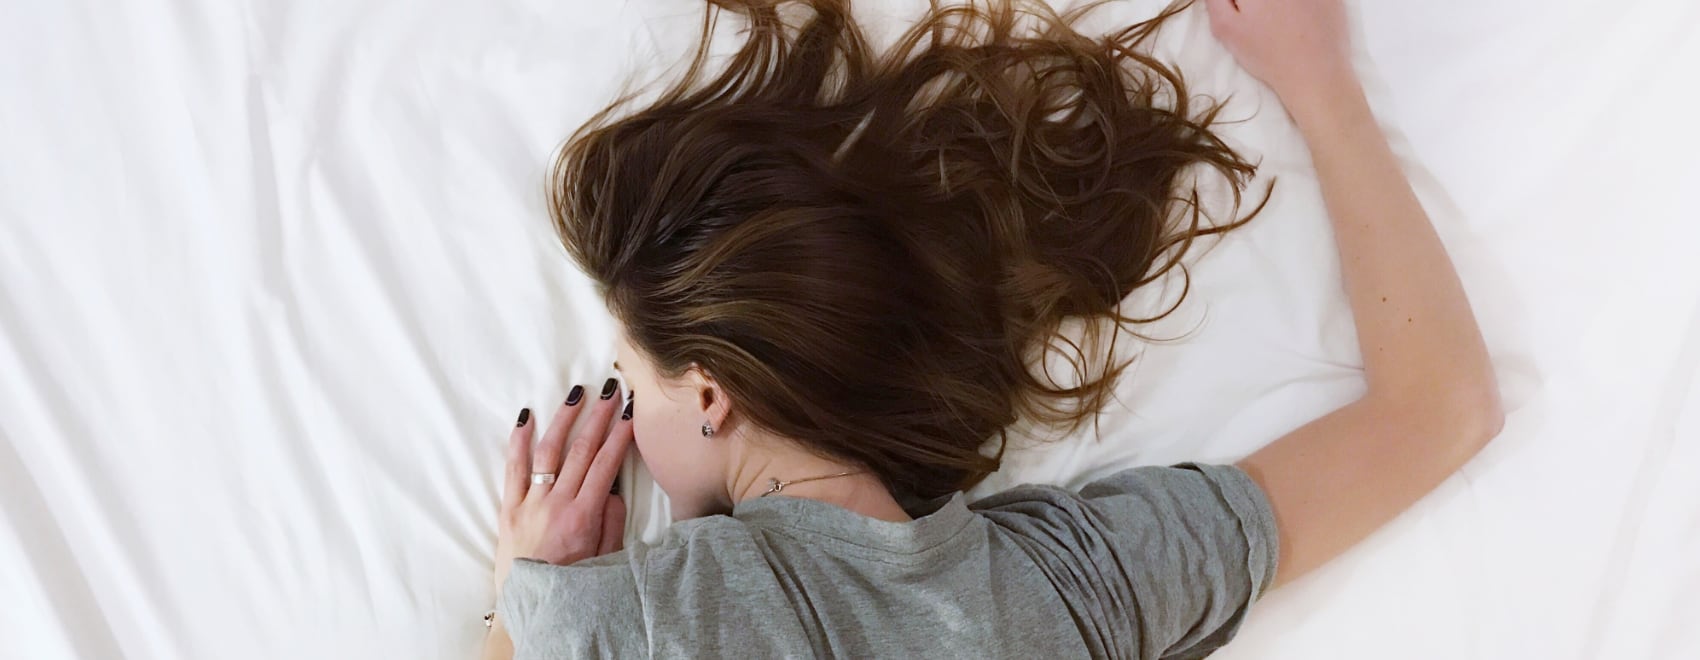 10 consejos para dormir mejor y tener más energía